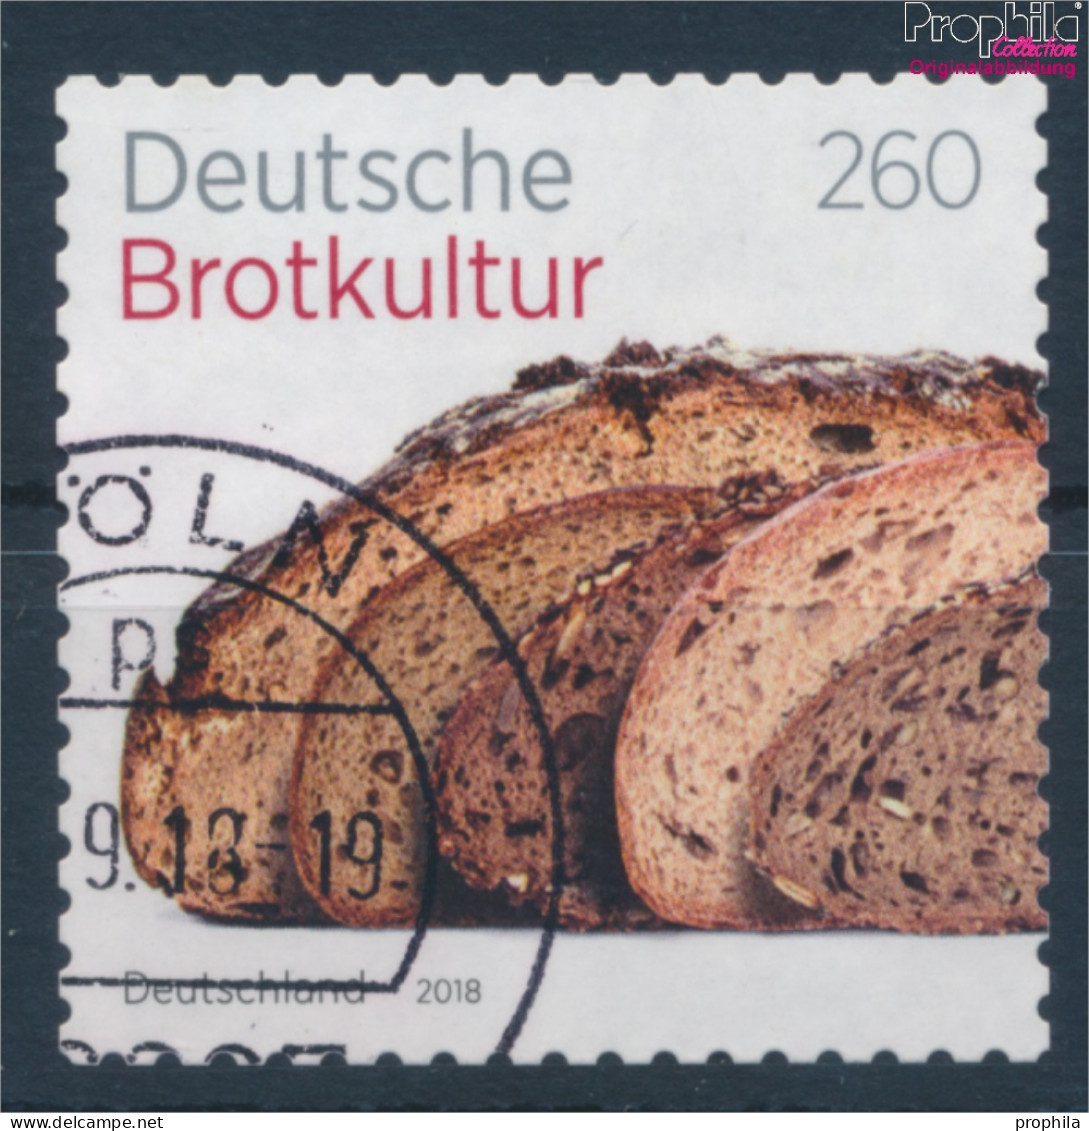 BRD 3390 (kompl.Ausg.) Selbstklebende Ausgabe Gestempelt 2018 Deutsche Brotkultur (10352040 - Gebraucht